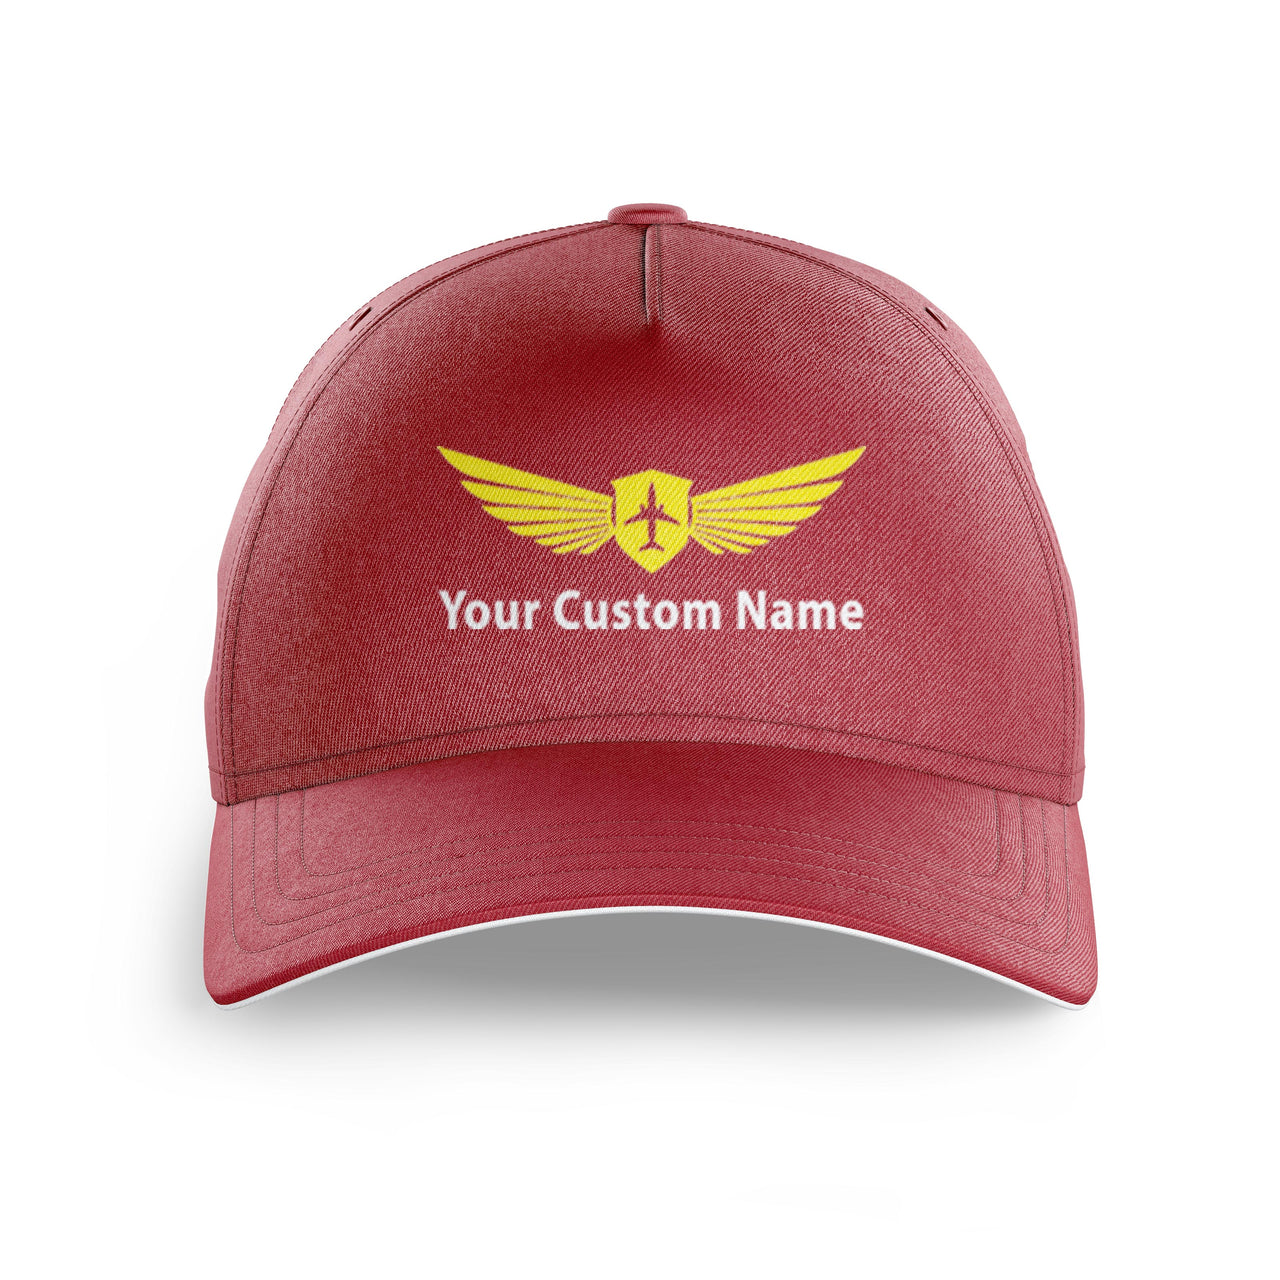 Custom Name (Badge 2) Printed Hats